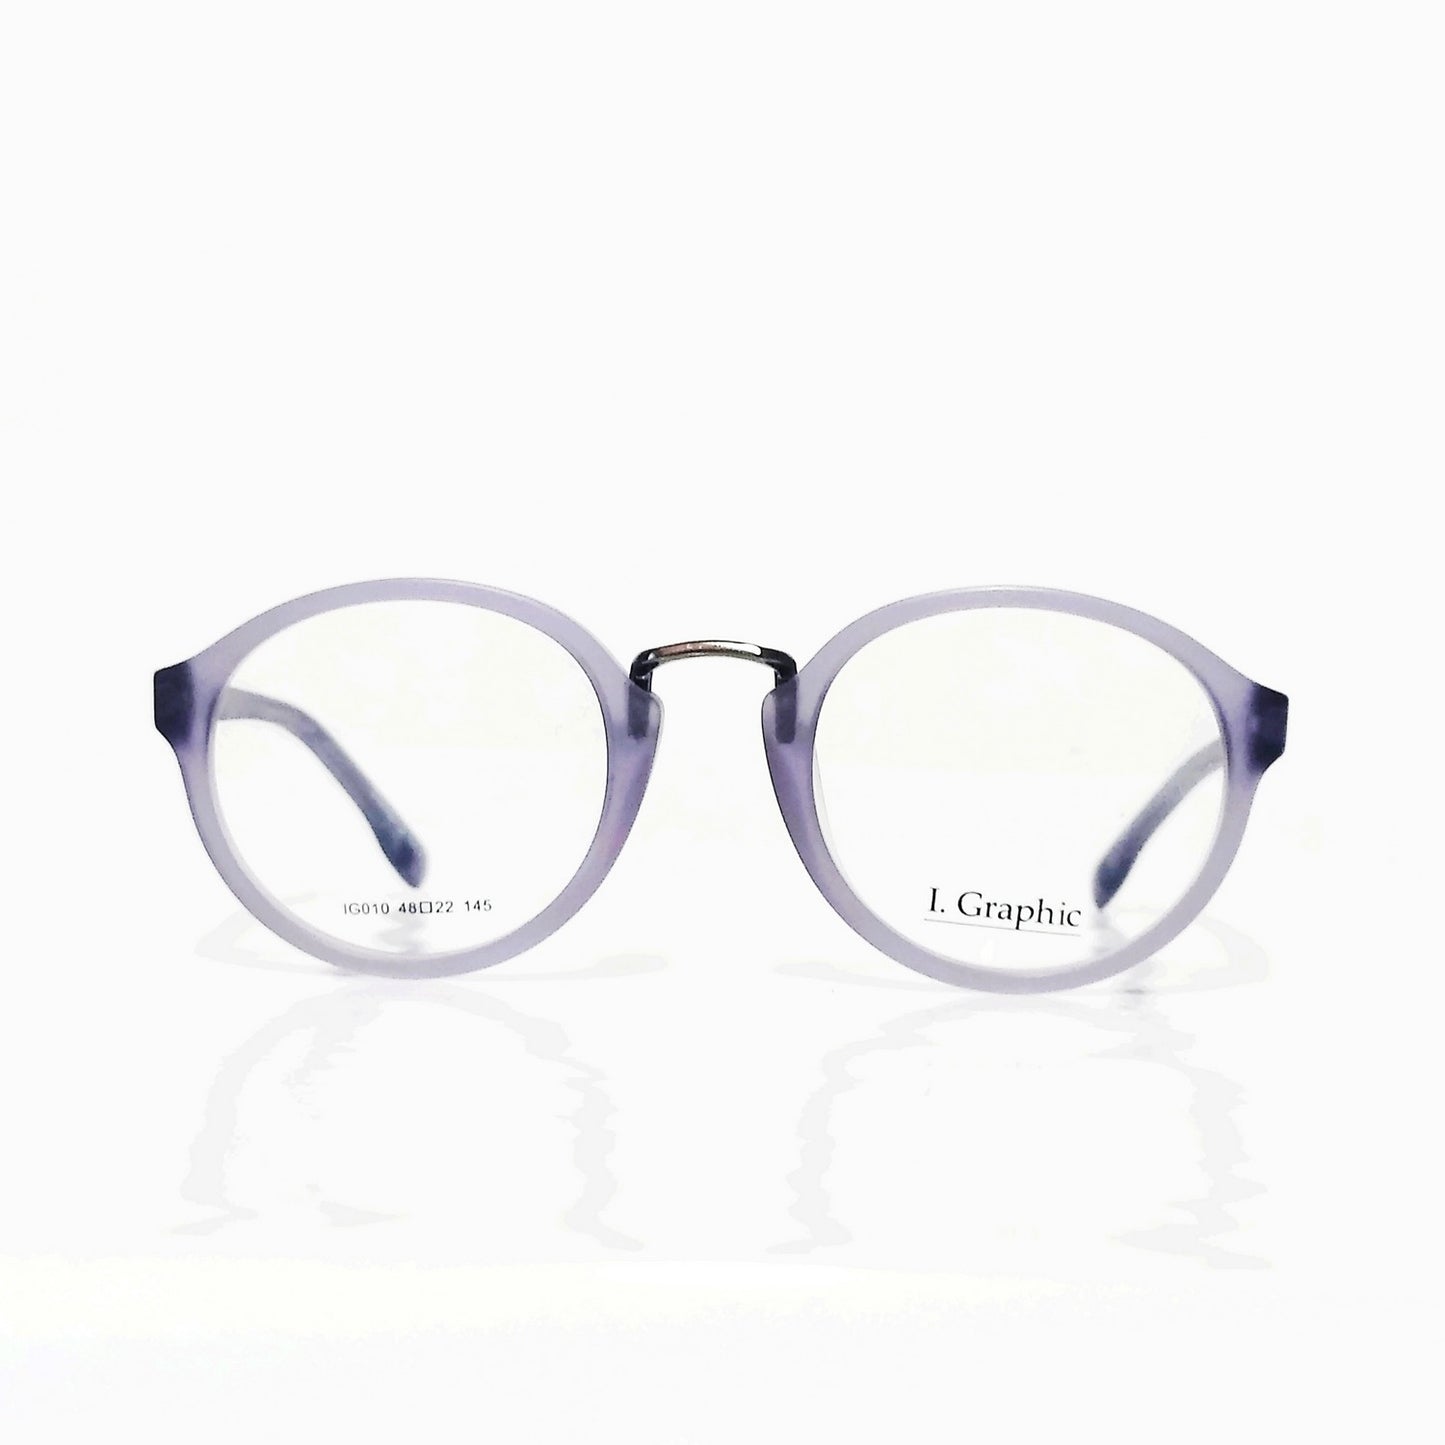 Premium Acetate Frame Full Frame Glasses Spectacle Frames for Men and Women IG010